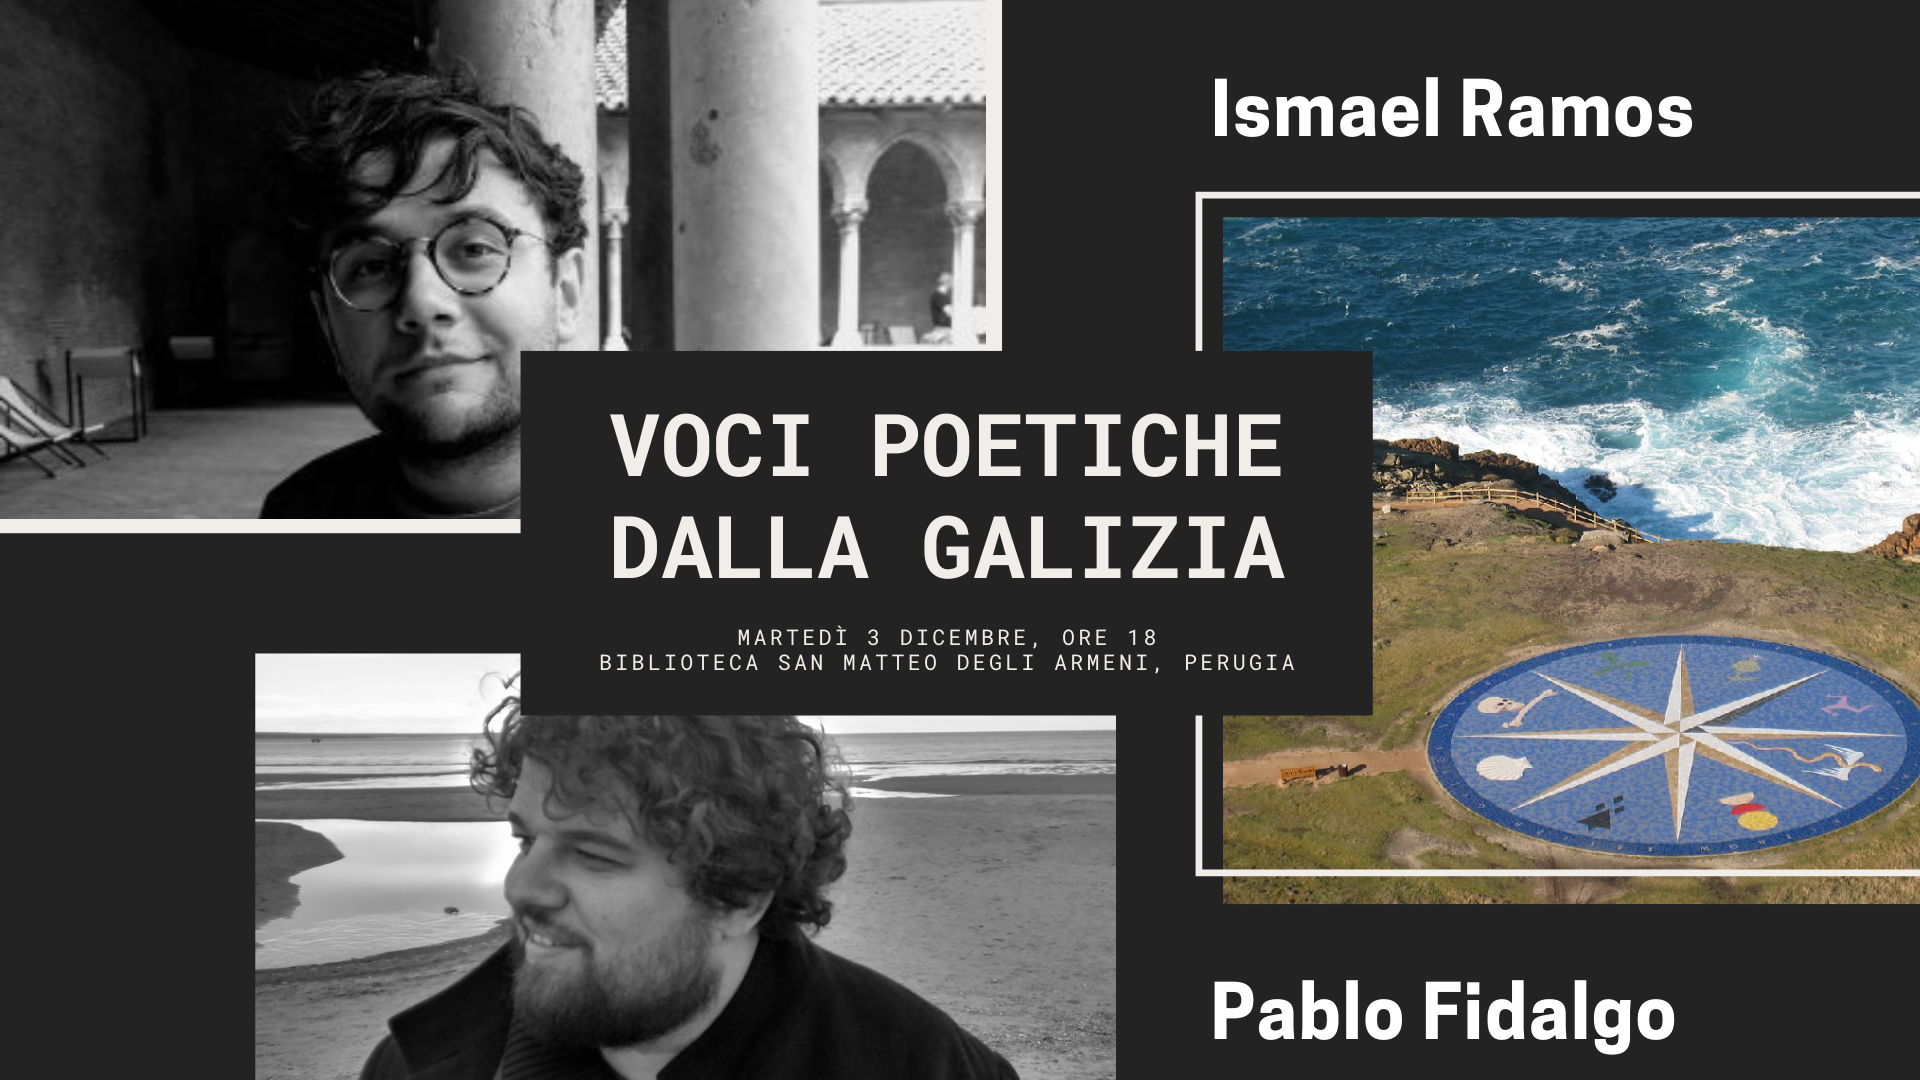 Voci poetiche dalla Galizia – Ismael Ramos e Pablo Fidalgo